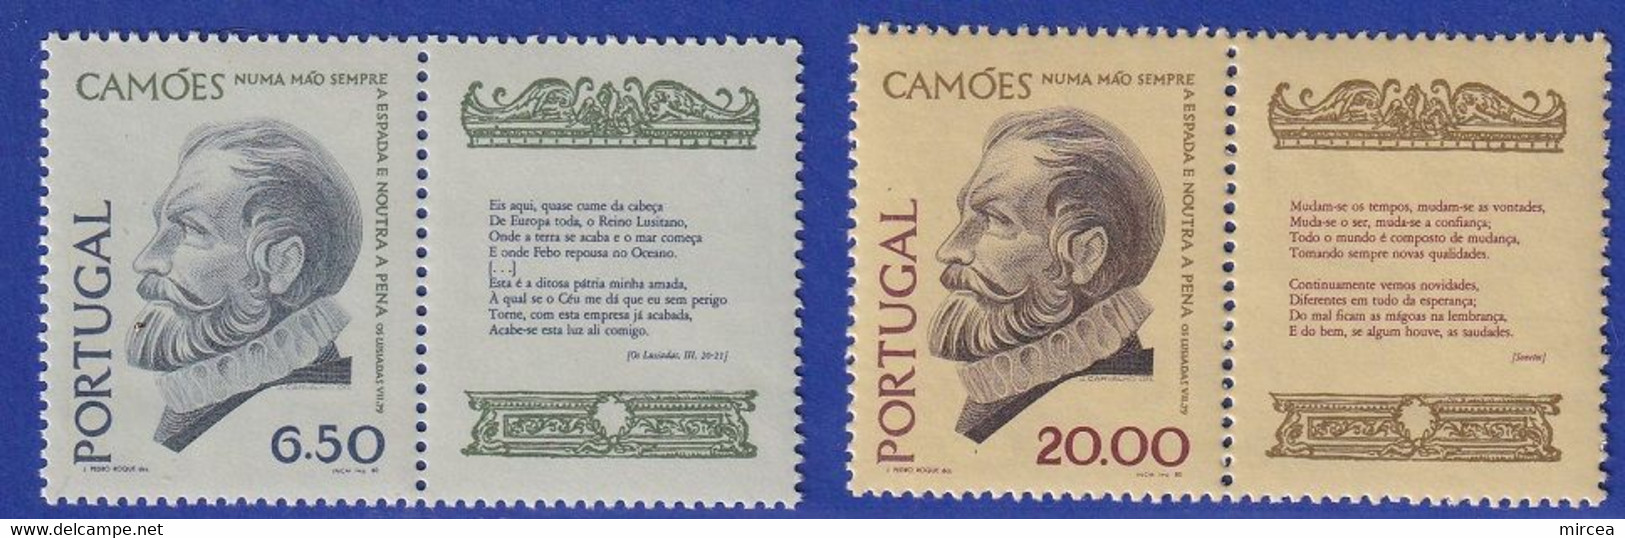 C3141 - Portugal 1980 - 34 Timbres Neufs** - Collezioni